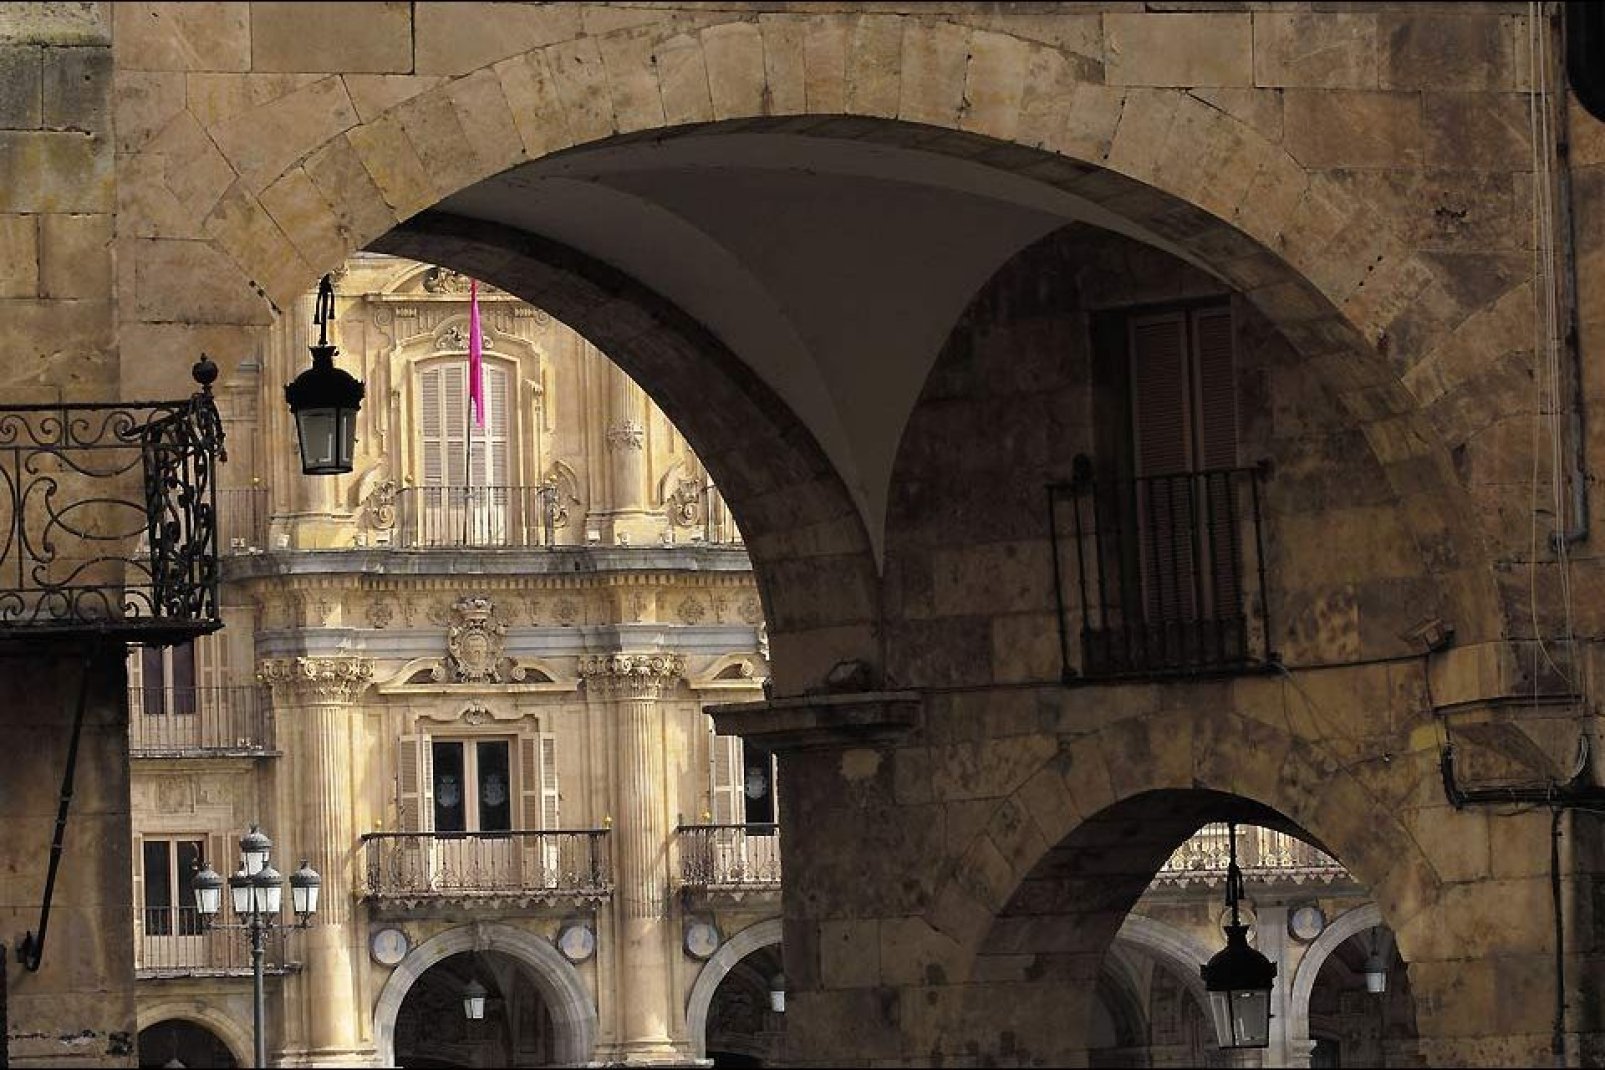 La place fut construite au XVIIIème siècle par Philippe V d'Espagne pour remercier la ville de sa fidélité pendant la guerre de succession d'Espagne.